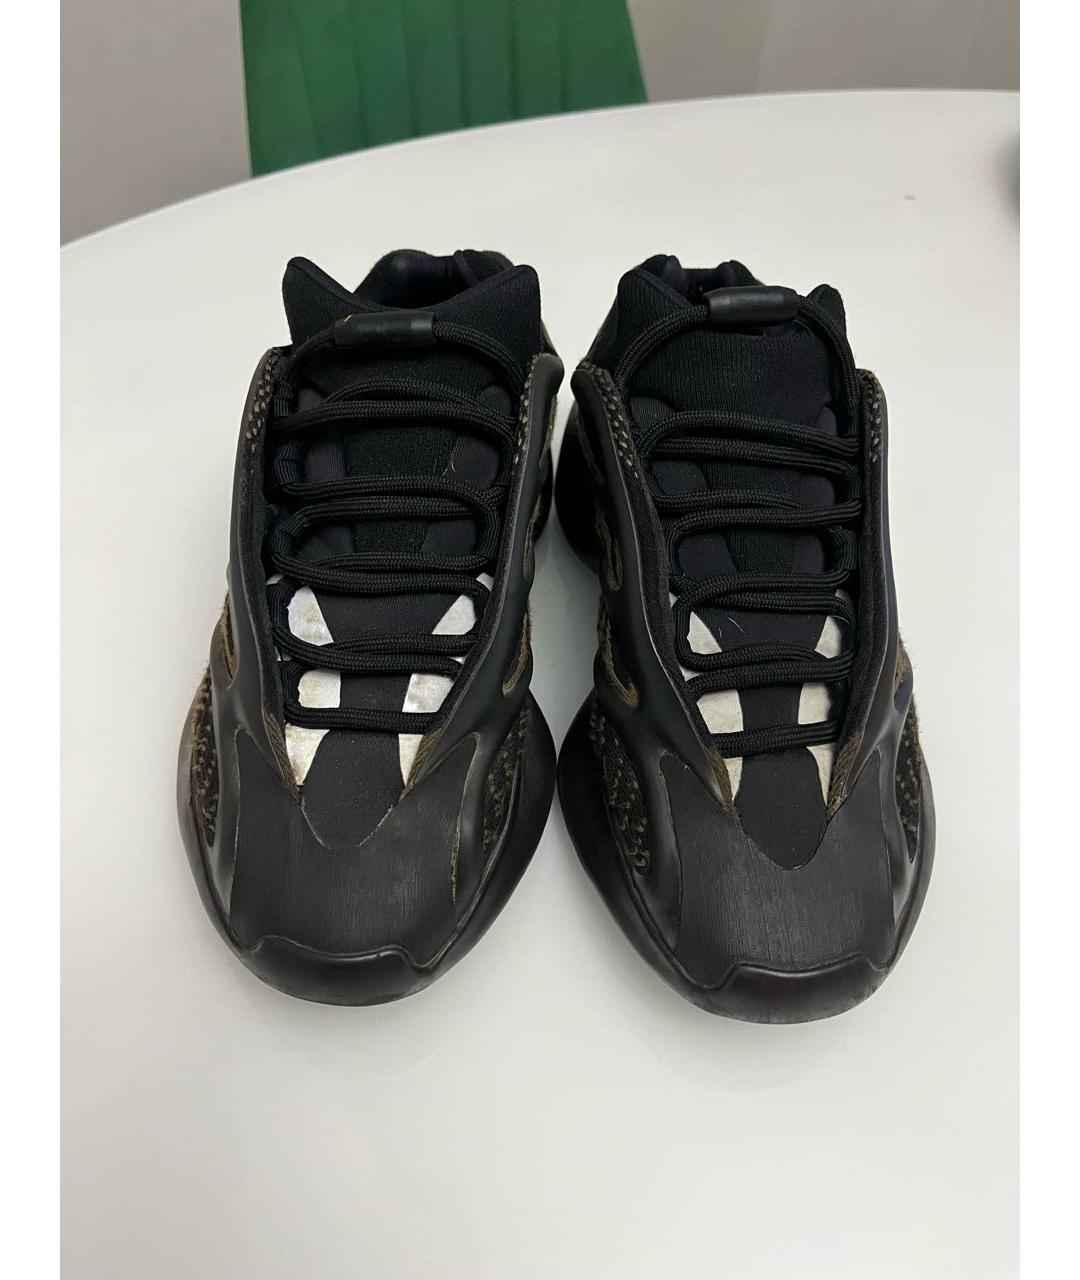 ADIDAS YEEZY Черные синтетические кроссовки, фото 2